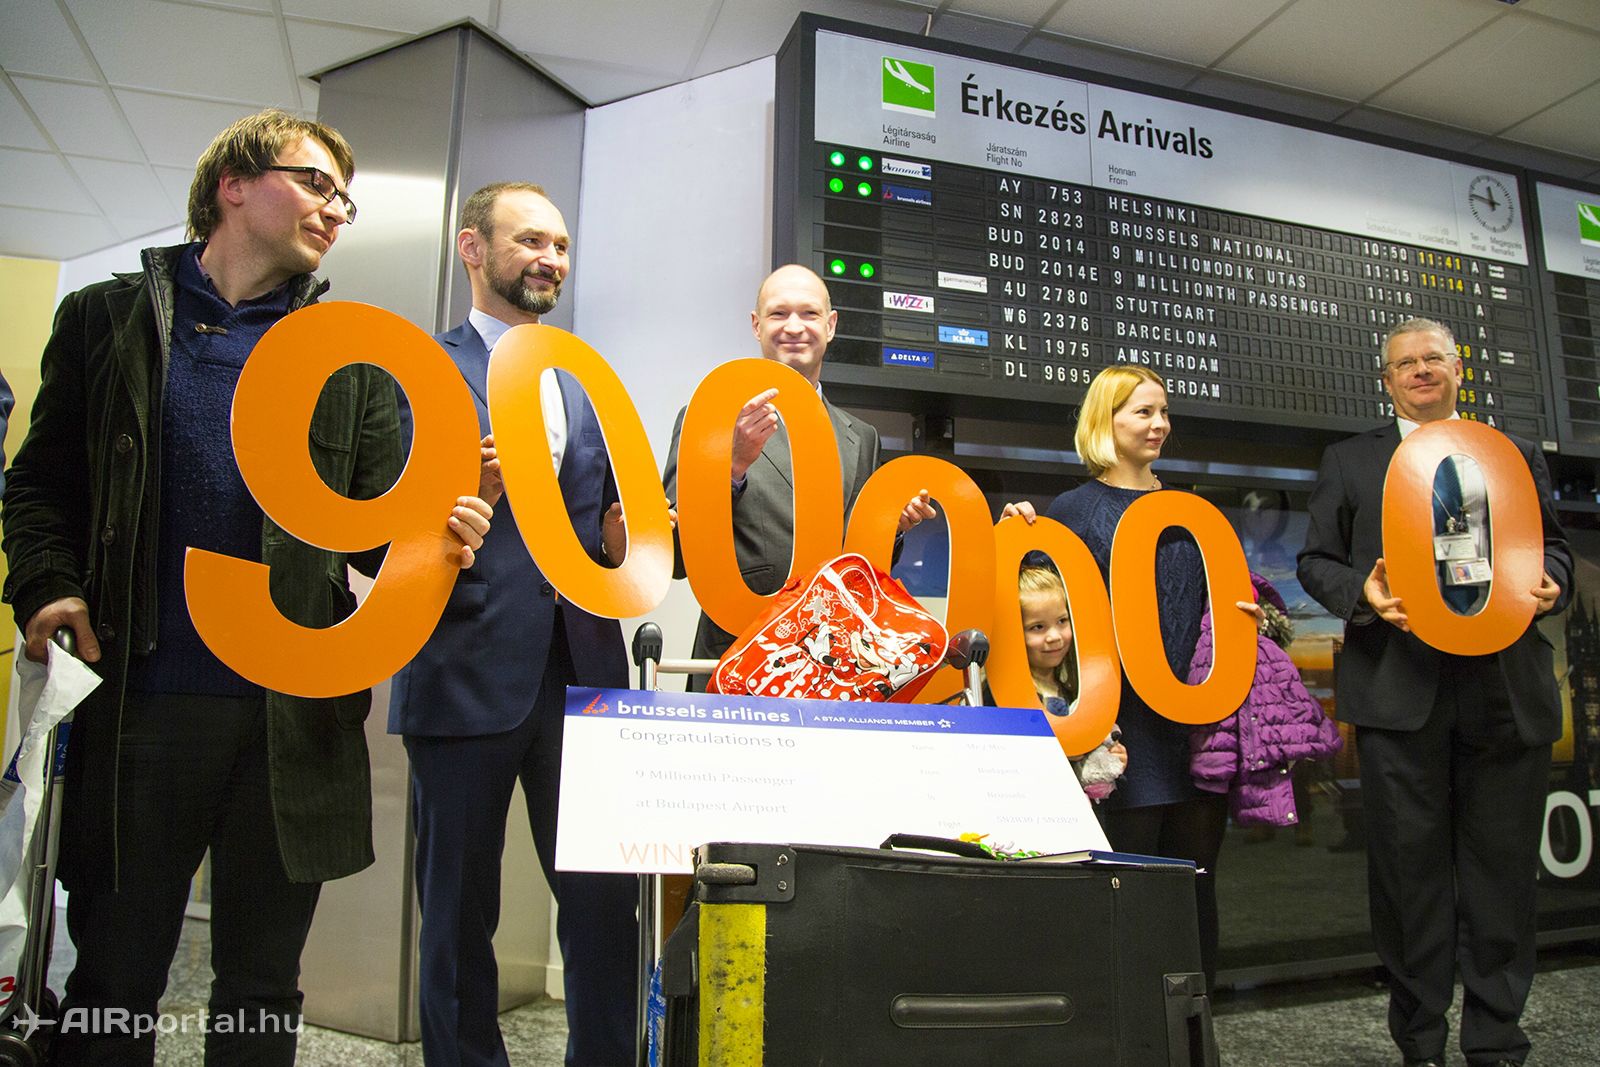 Az utasszám december 17-én lépte át a 9 milliót. (Fotó: AIRportal.hu) | © AIRportal.hu